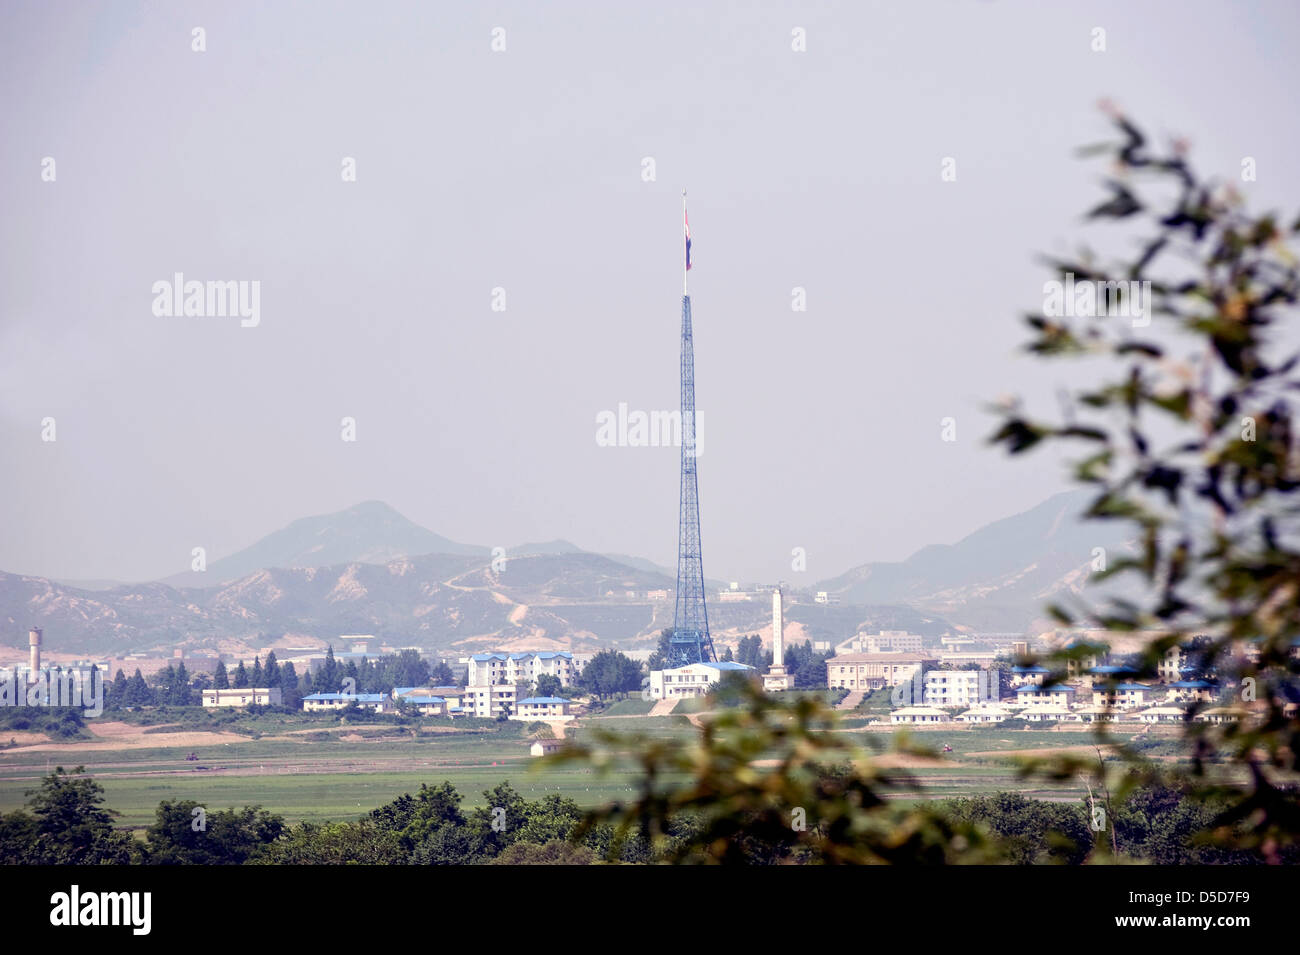 Un mât, estimé à environ 160 mètres de hauteur, se dresse sur le côté nord-coréen de la zone démilitarisée (DMZ) à quelque 50 kilomètres au nord de Séoul, Corée du Sud, le 24 juin 2010..Photographe : Rob Gilhooly . Banque D'Images